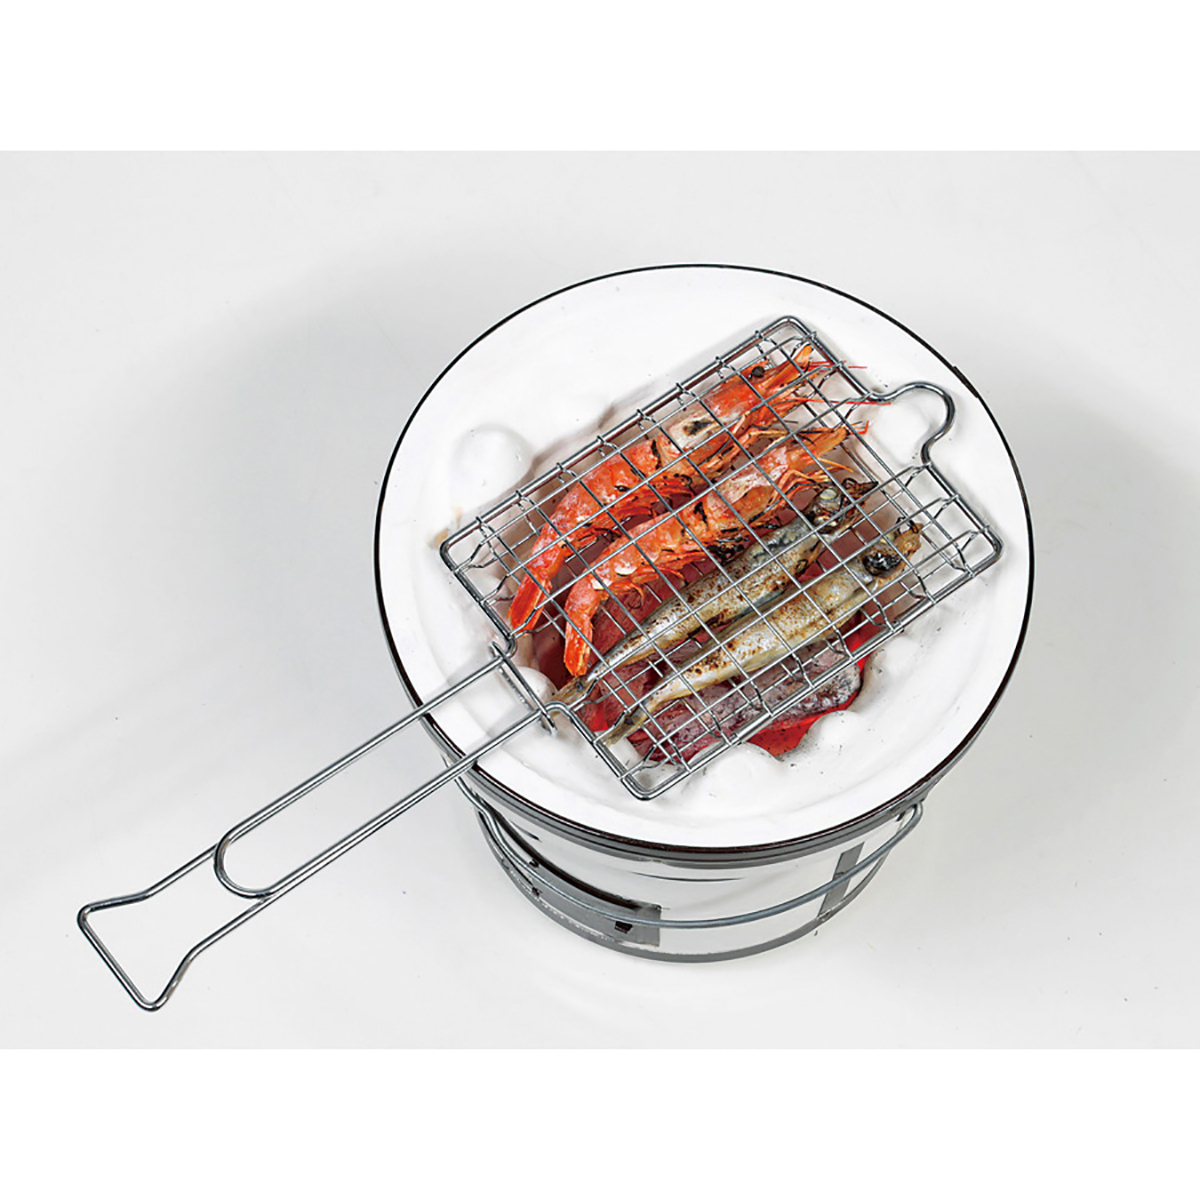 バーベキュー用鉄板 +焼き網 - 調理器具